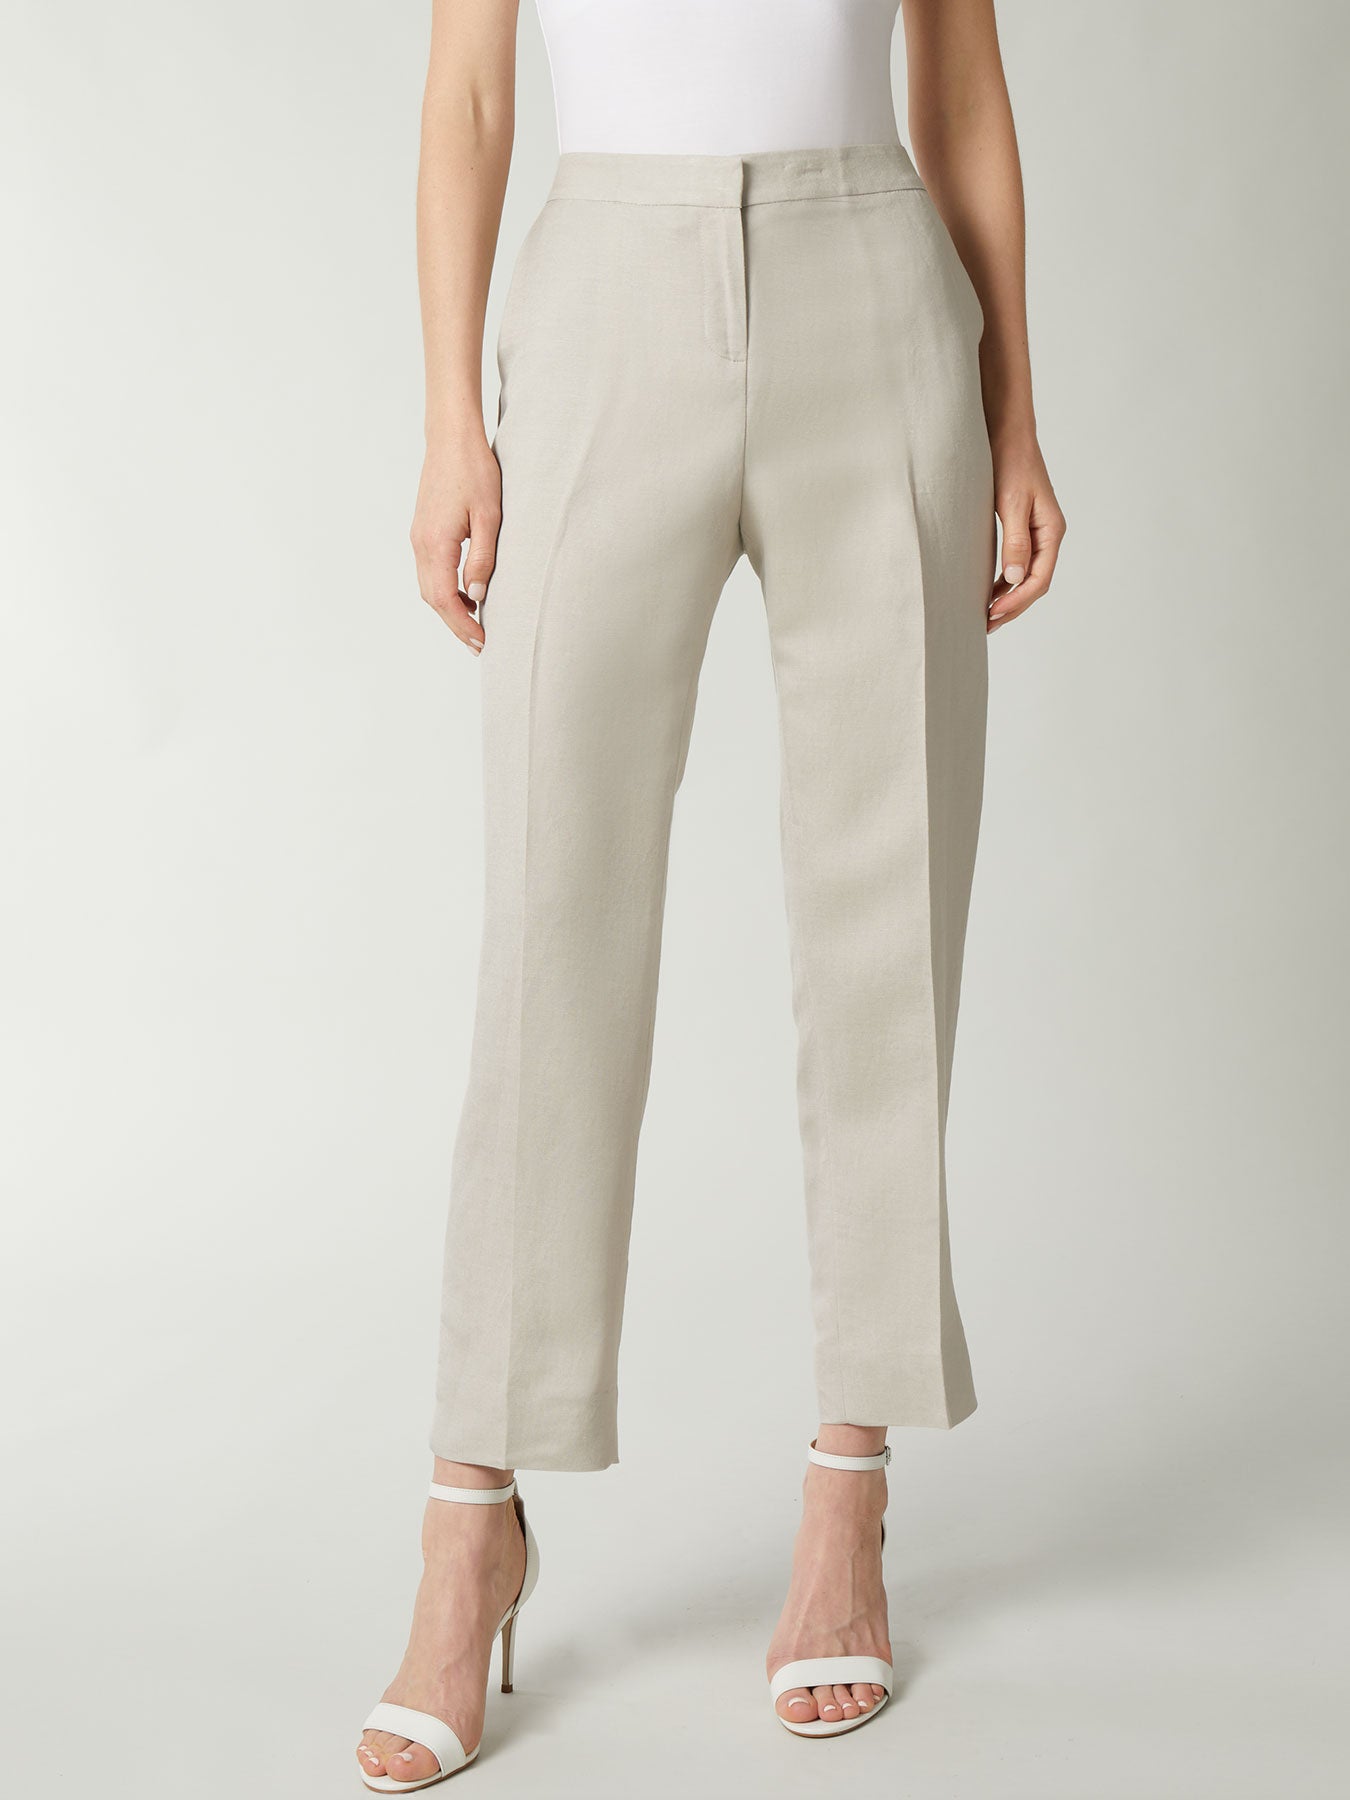 Women's Knit Pants - Business Casual Pants | Kasper